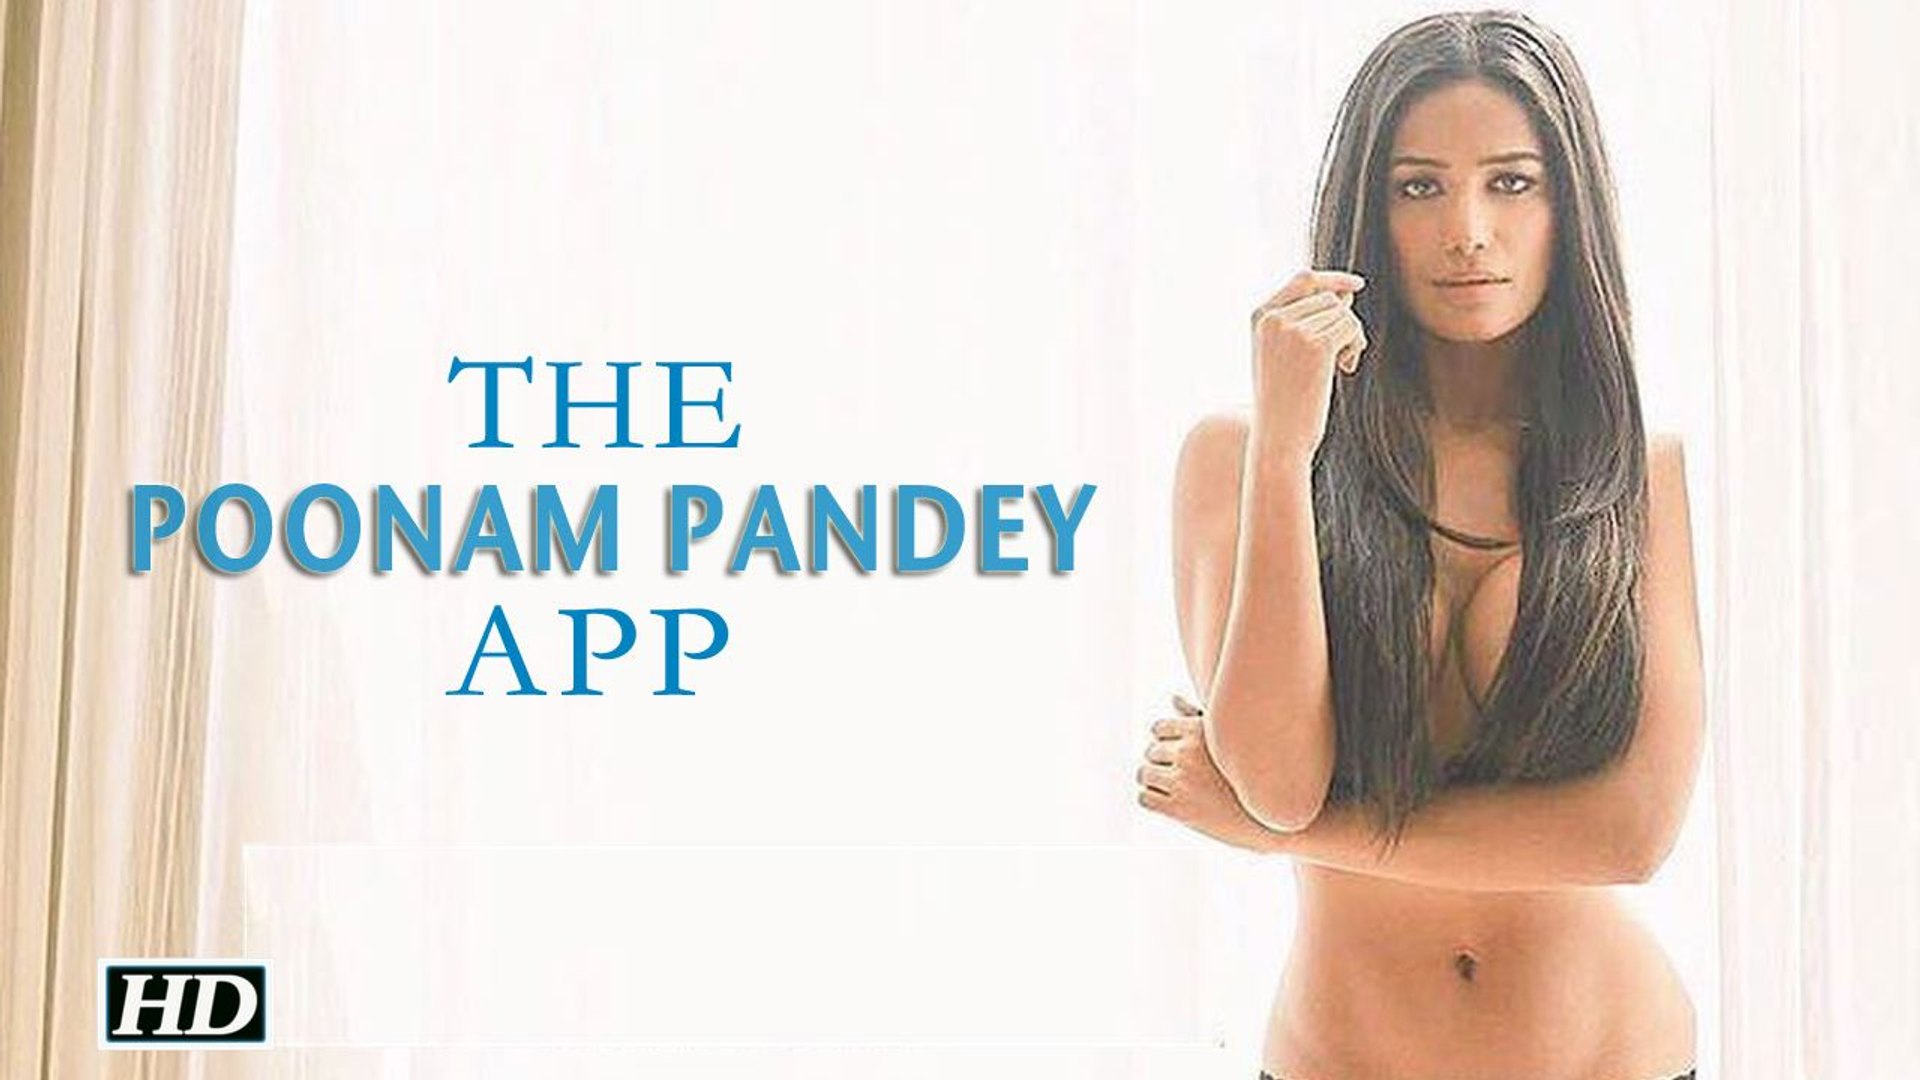 Poonam pandey new app video